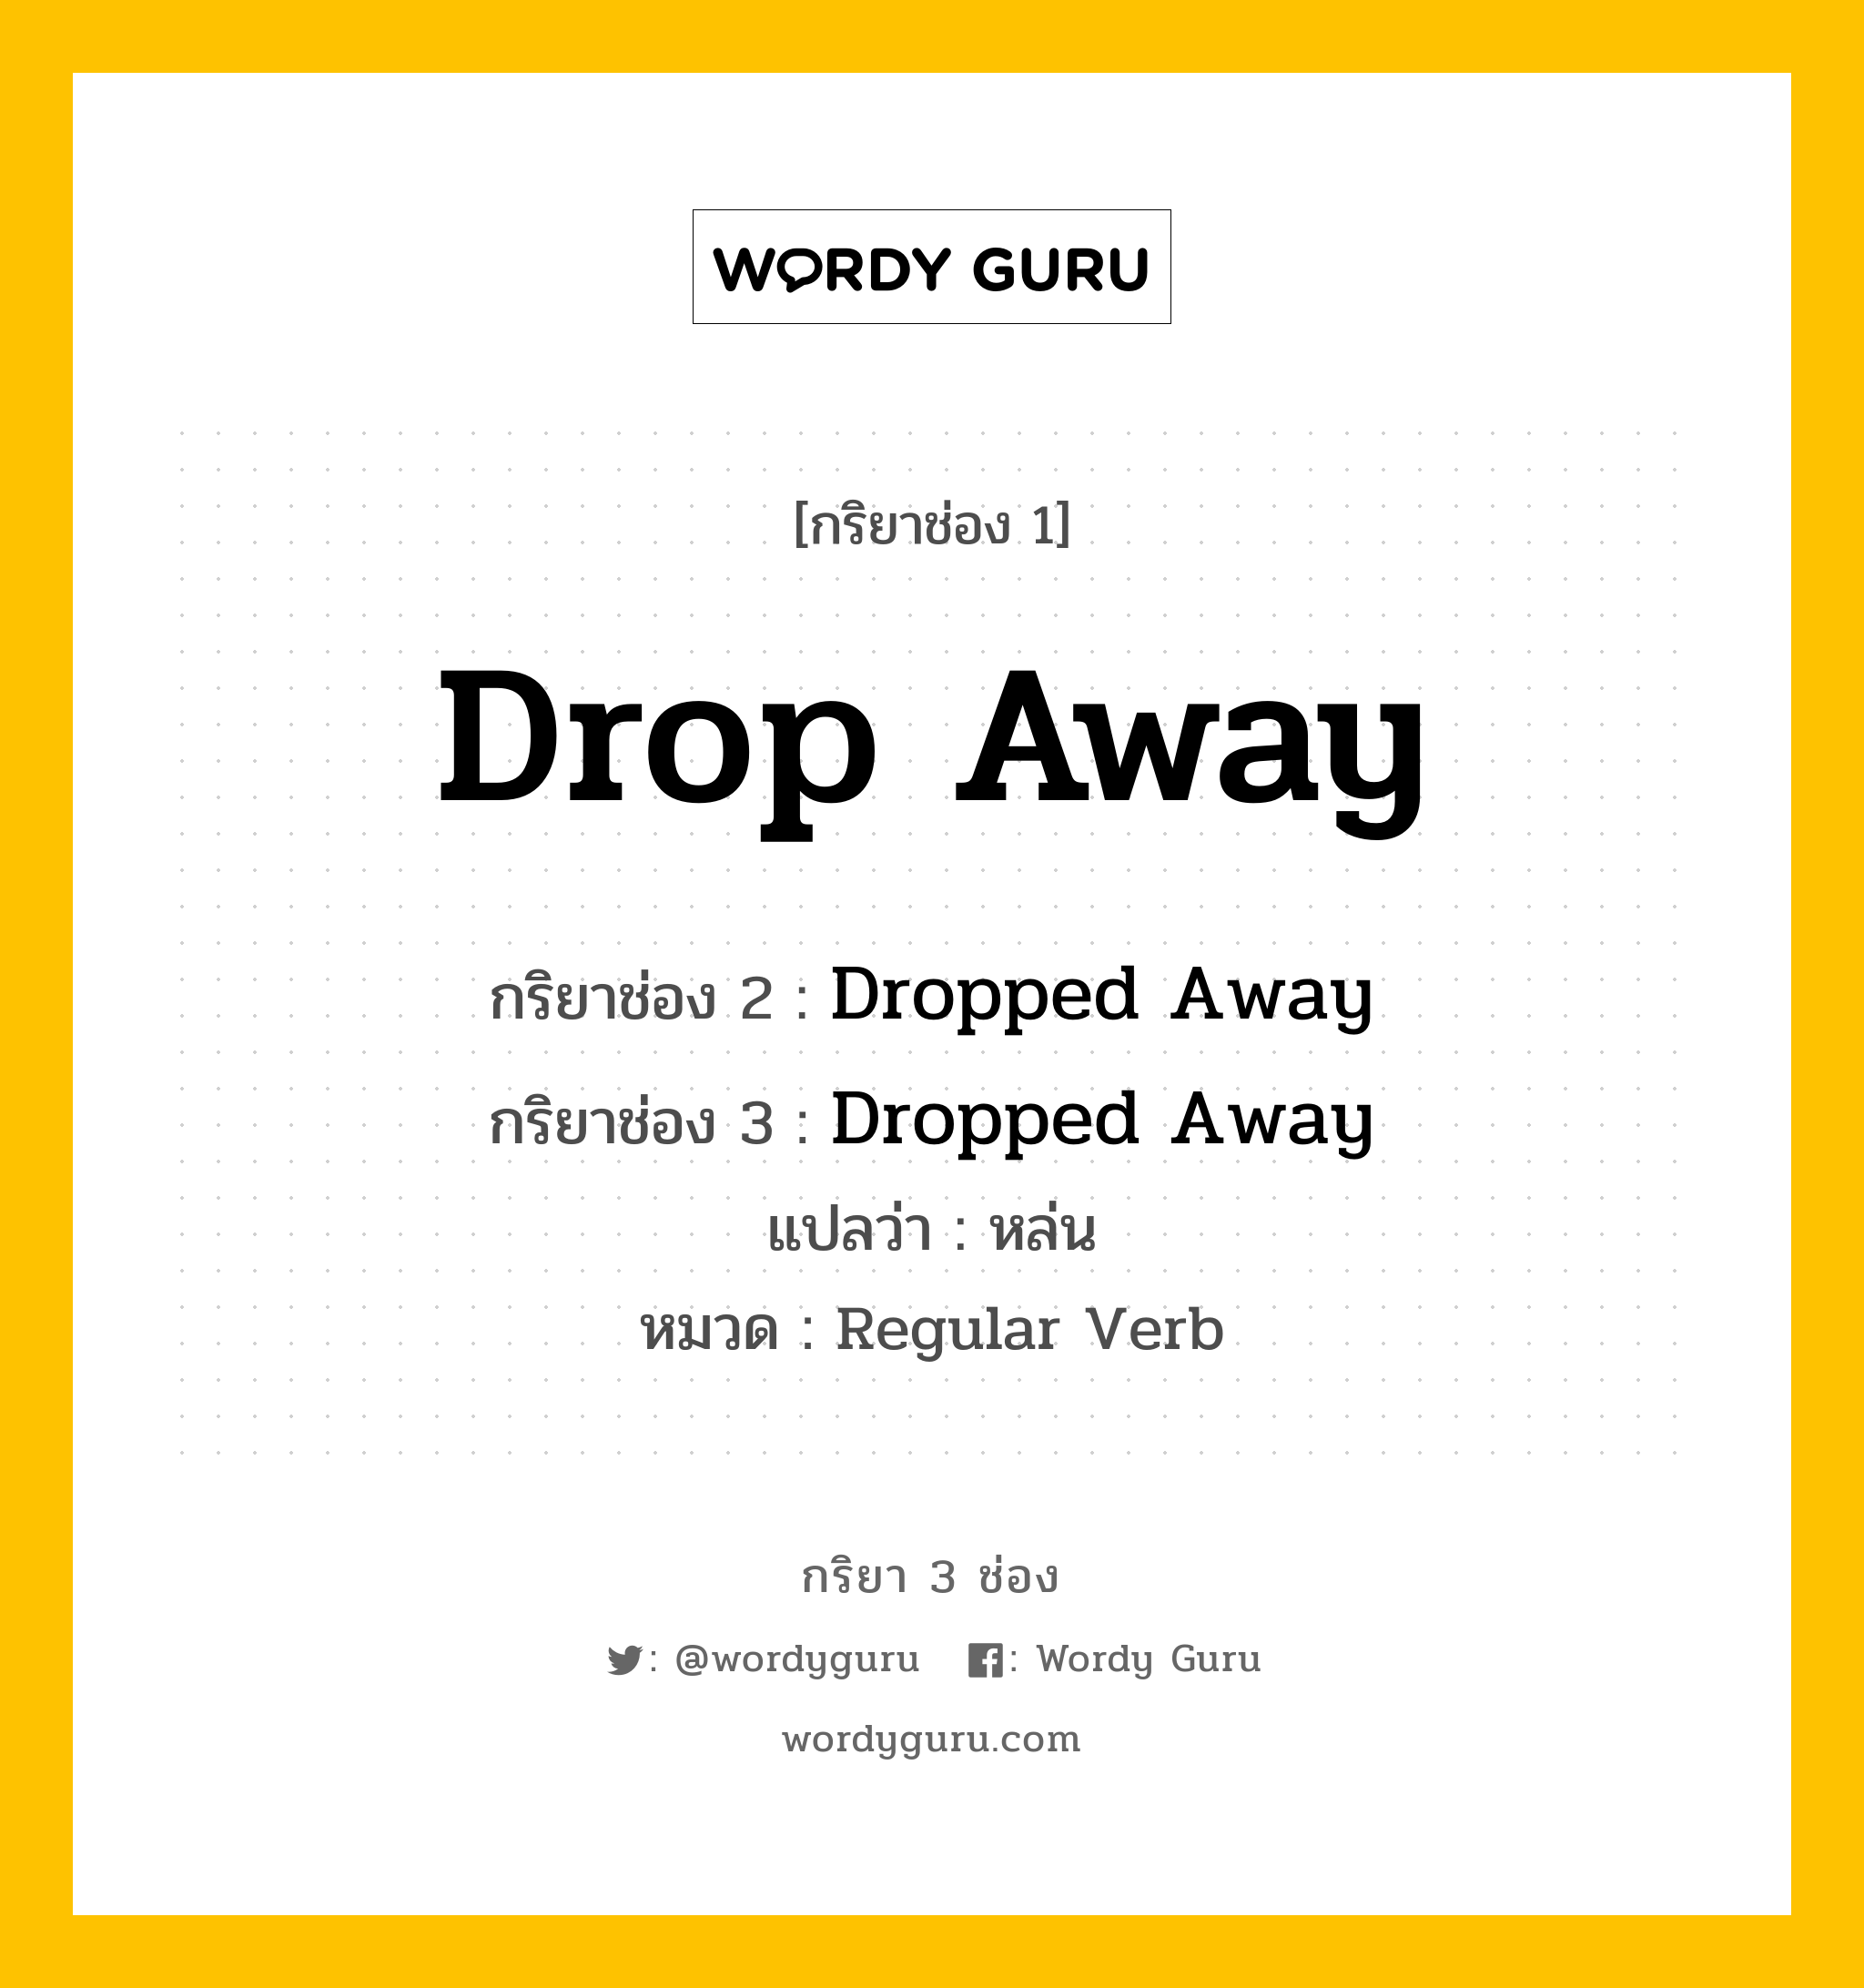 กริยา 3 ช่อง: Drop Away ช่อง 2 Drop Away ช่อง 3 คืออะไร, กริยาช่อง 1 Drop Away กริยาช่อง 2 Dropped Away กริยาช่อง 3 Dropped Away แปลว่า หล่น หมวด Regular Verb หมวด Regular Verb